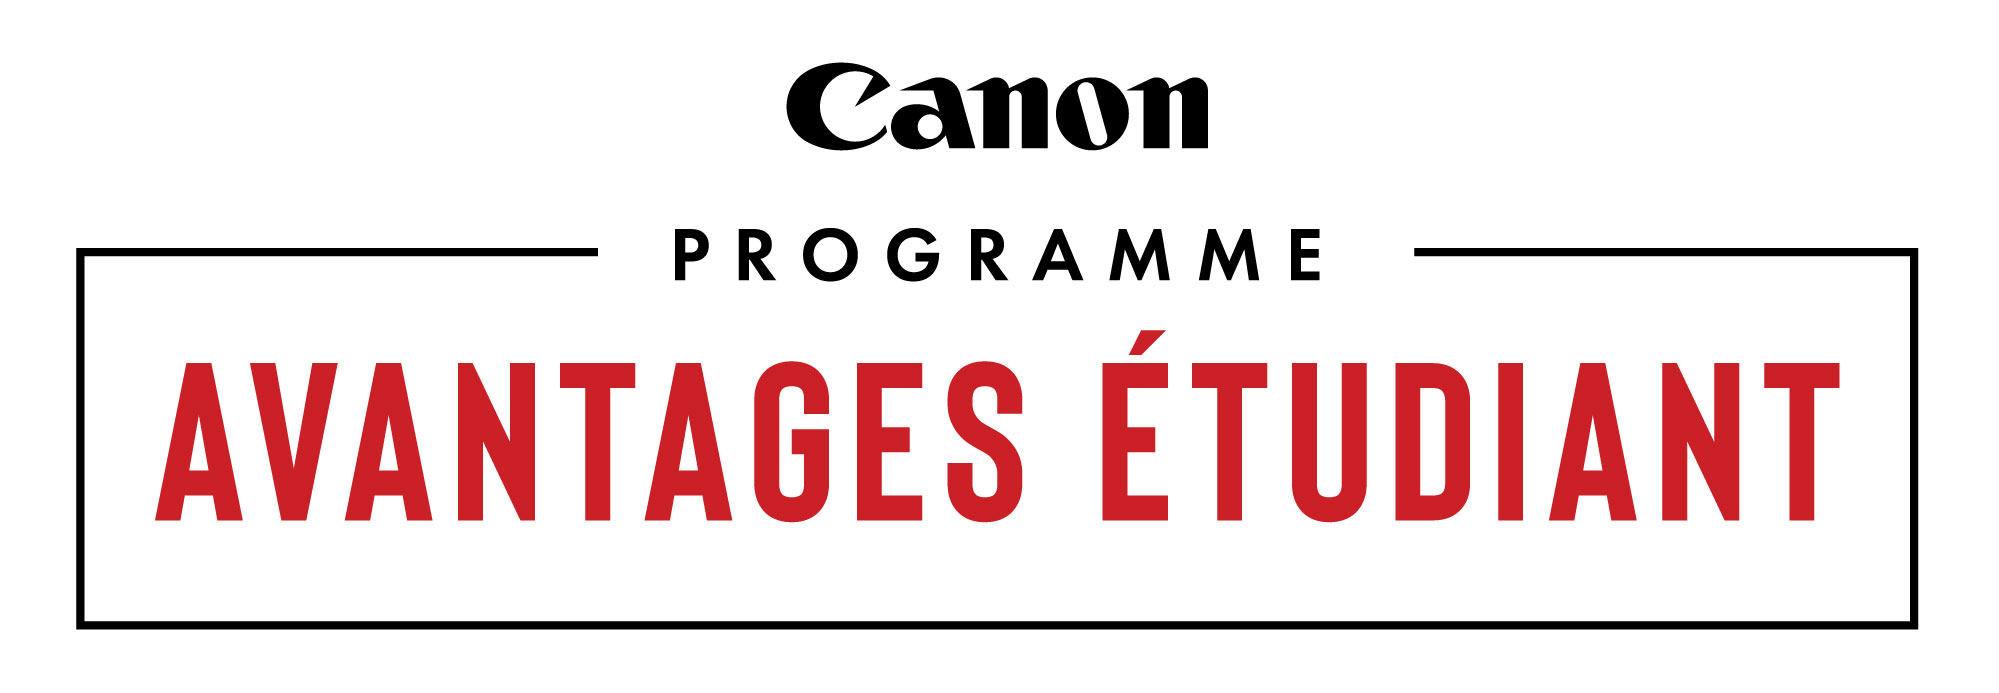 Canon Student Advantage